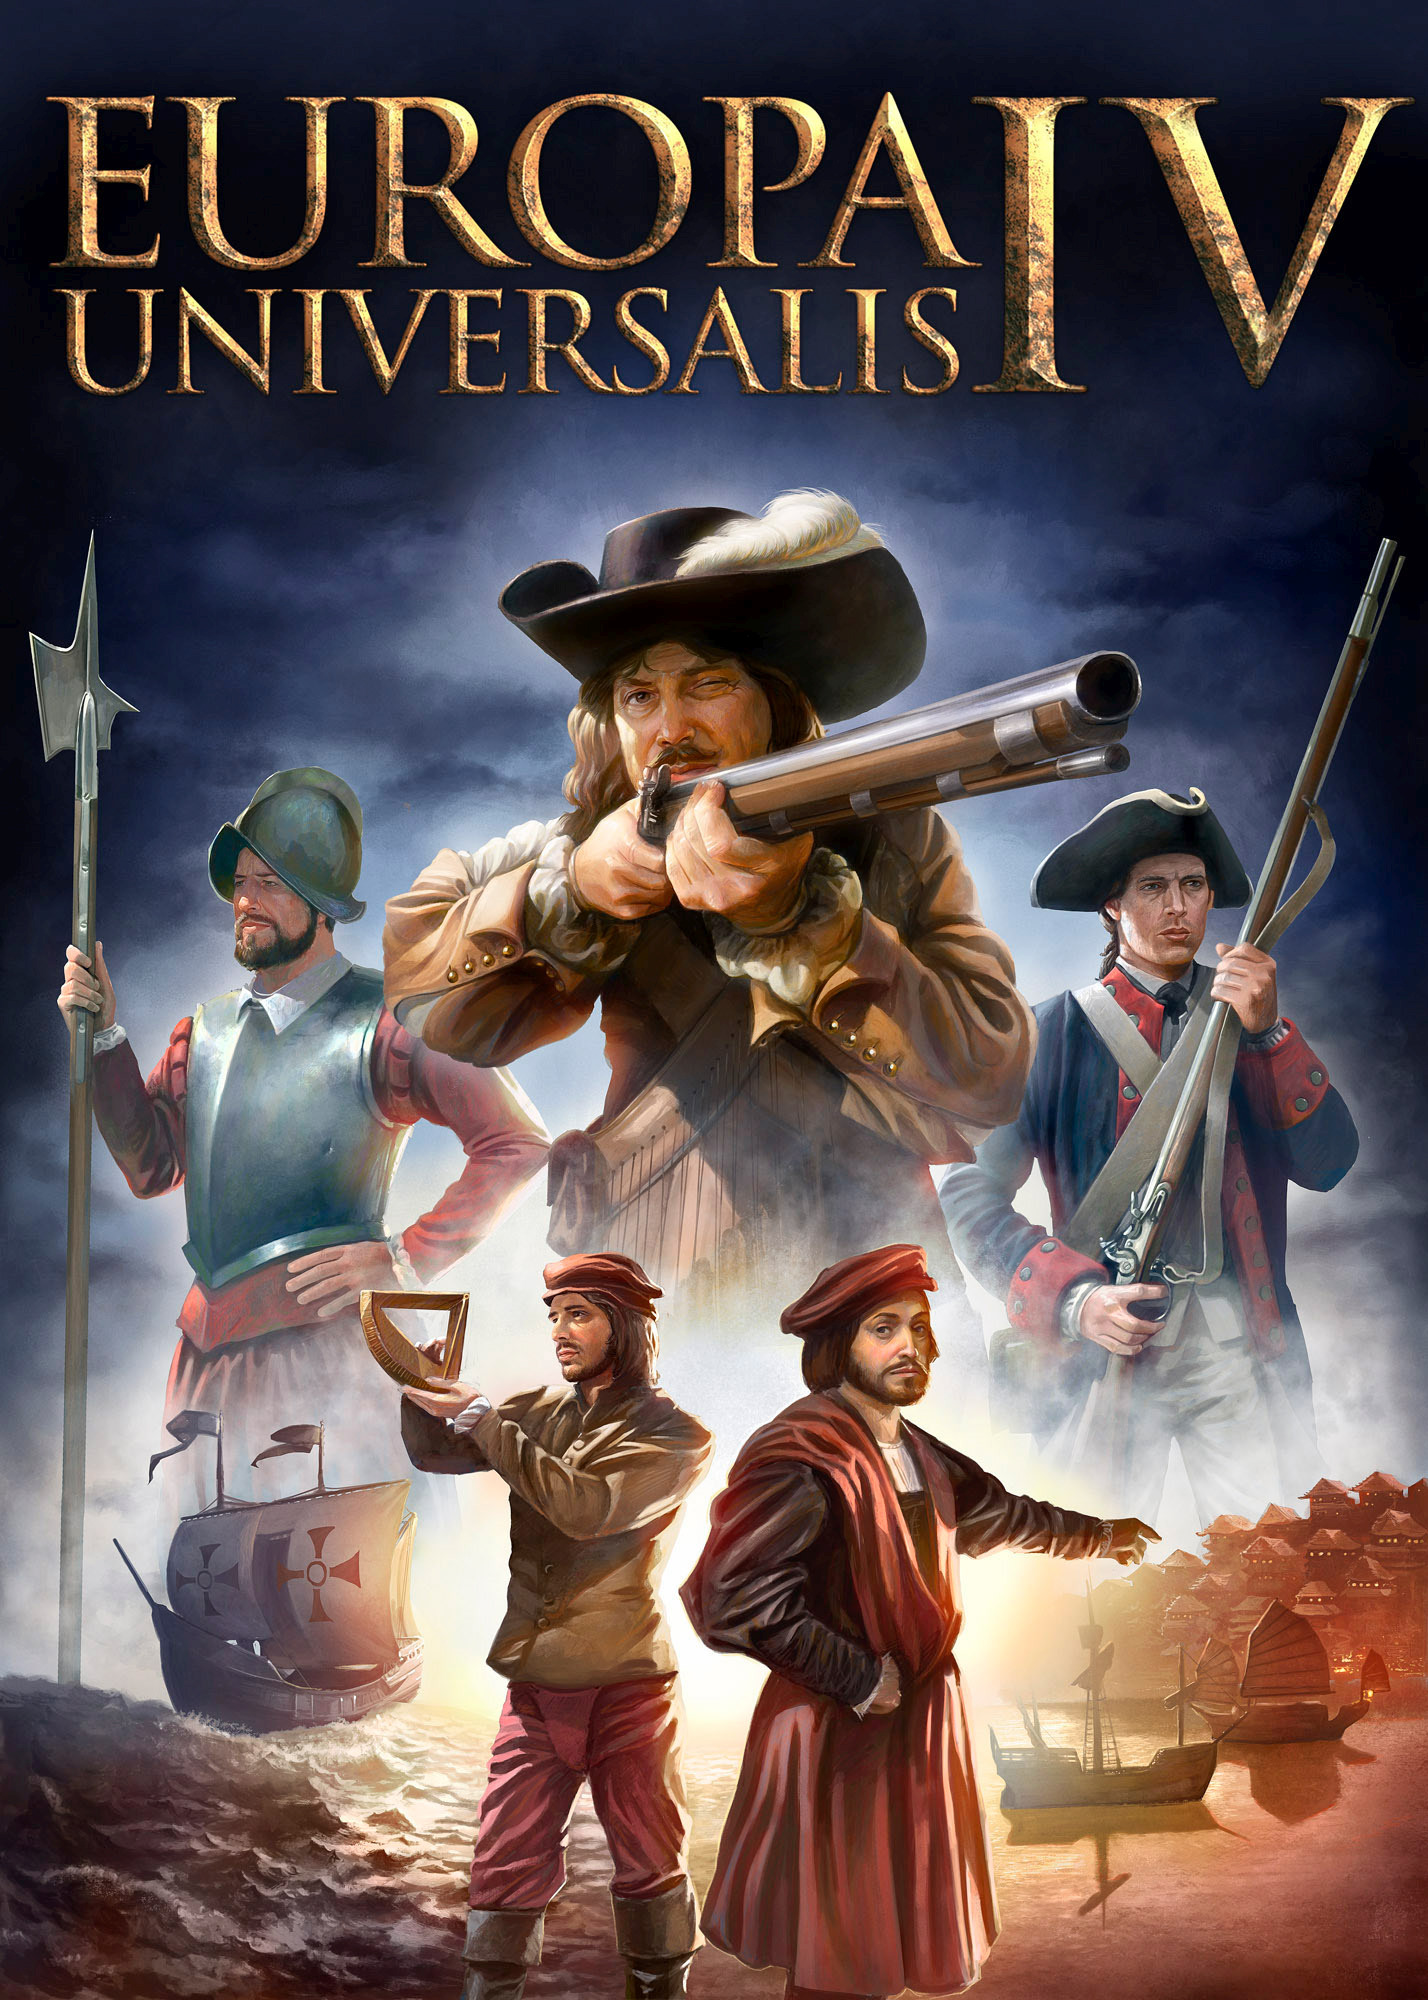 سی دی کی اریجینال استیم بازی Europa Universalis IV